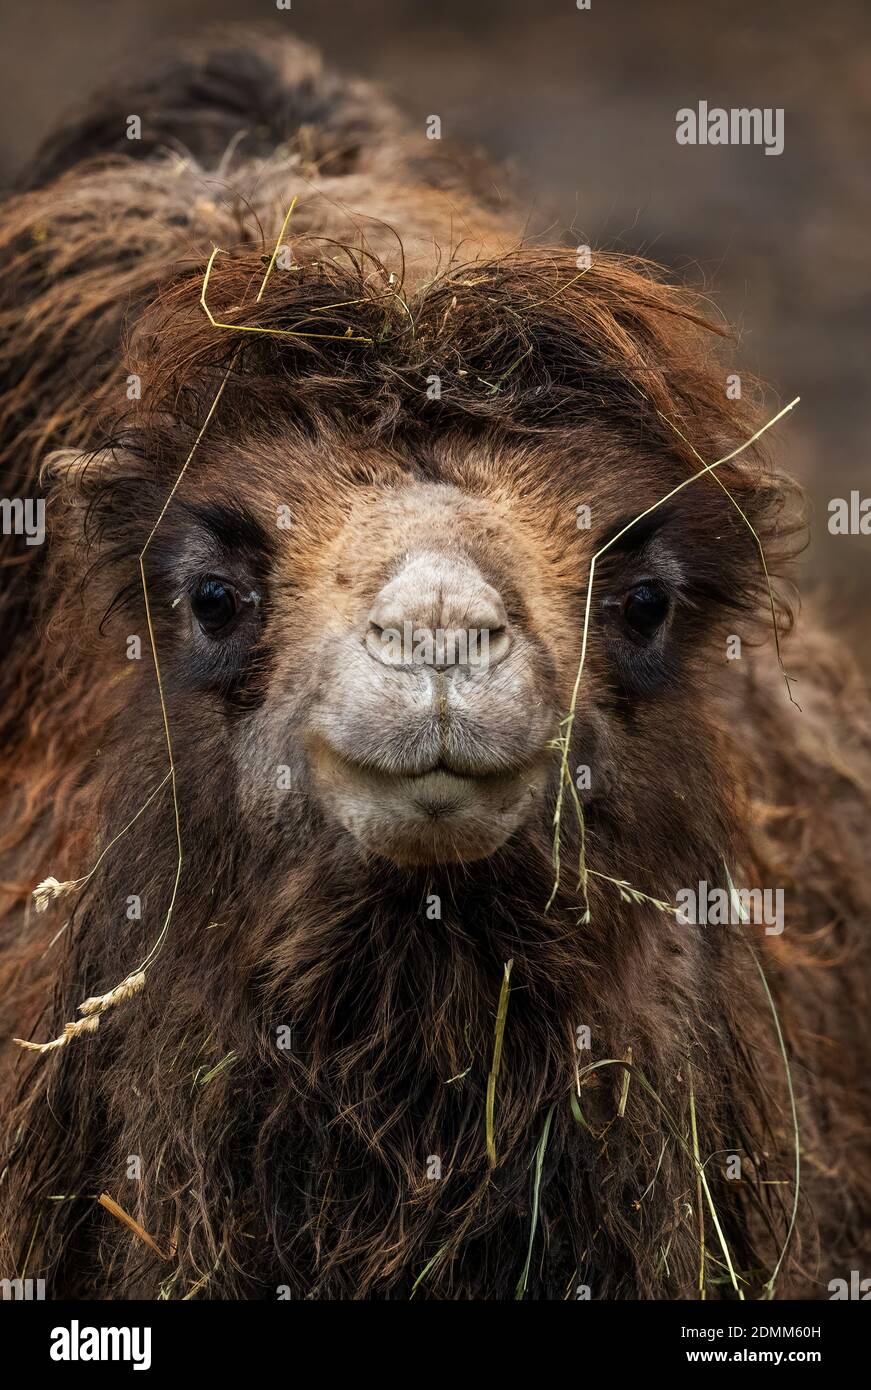 Camel de Bactrian - Camelus bactrianus, grand mammifère des déserts et des steppes asiatiques, Mongolie. Banque D'Images